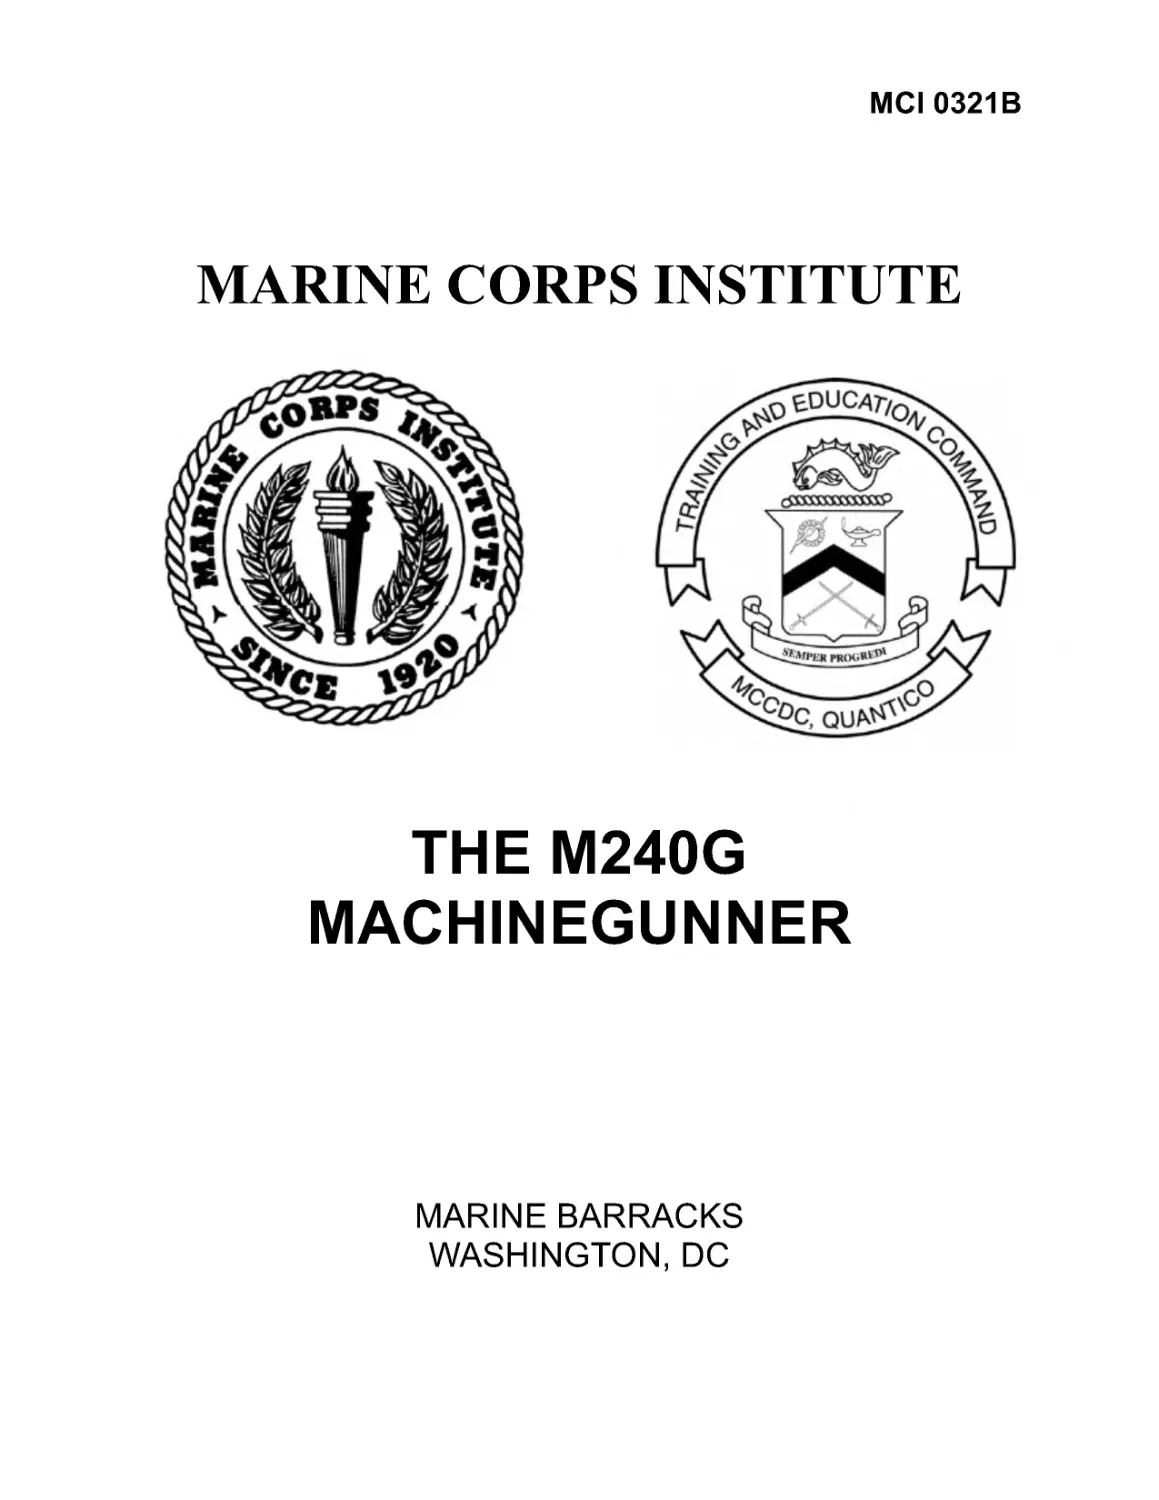 MCI 0321, The Machinegunner